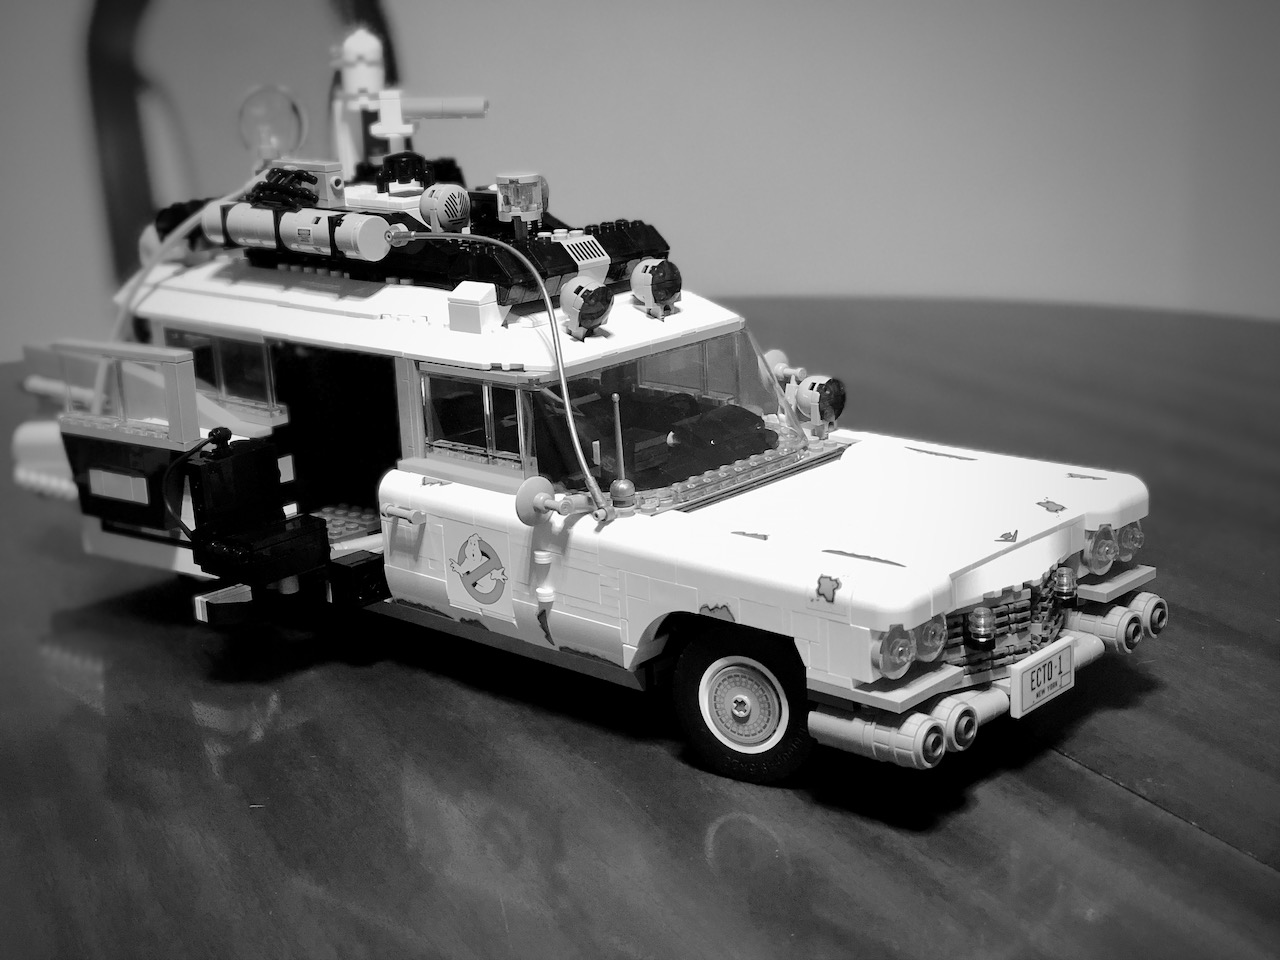 Lego Ghostbuster Cadillac